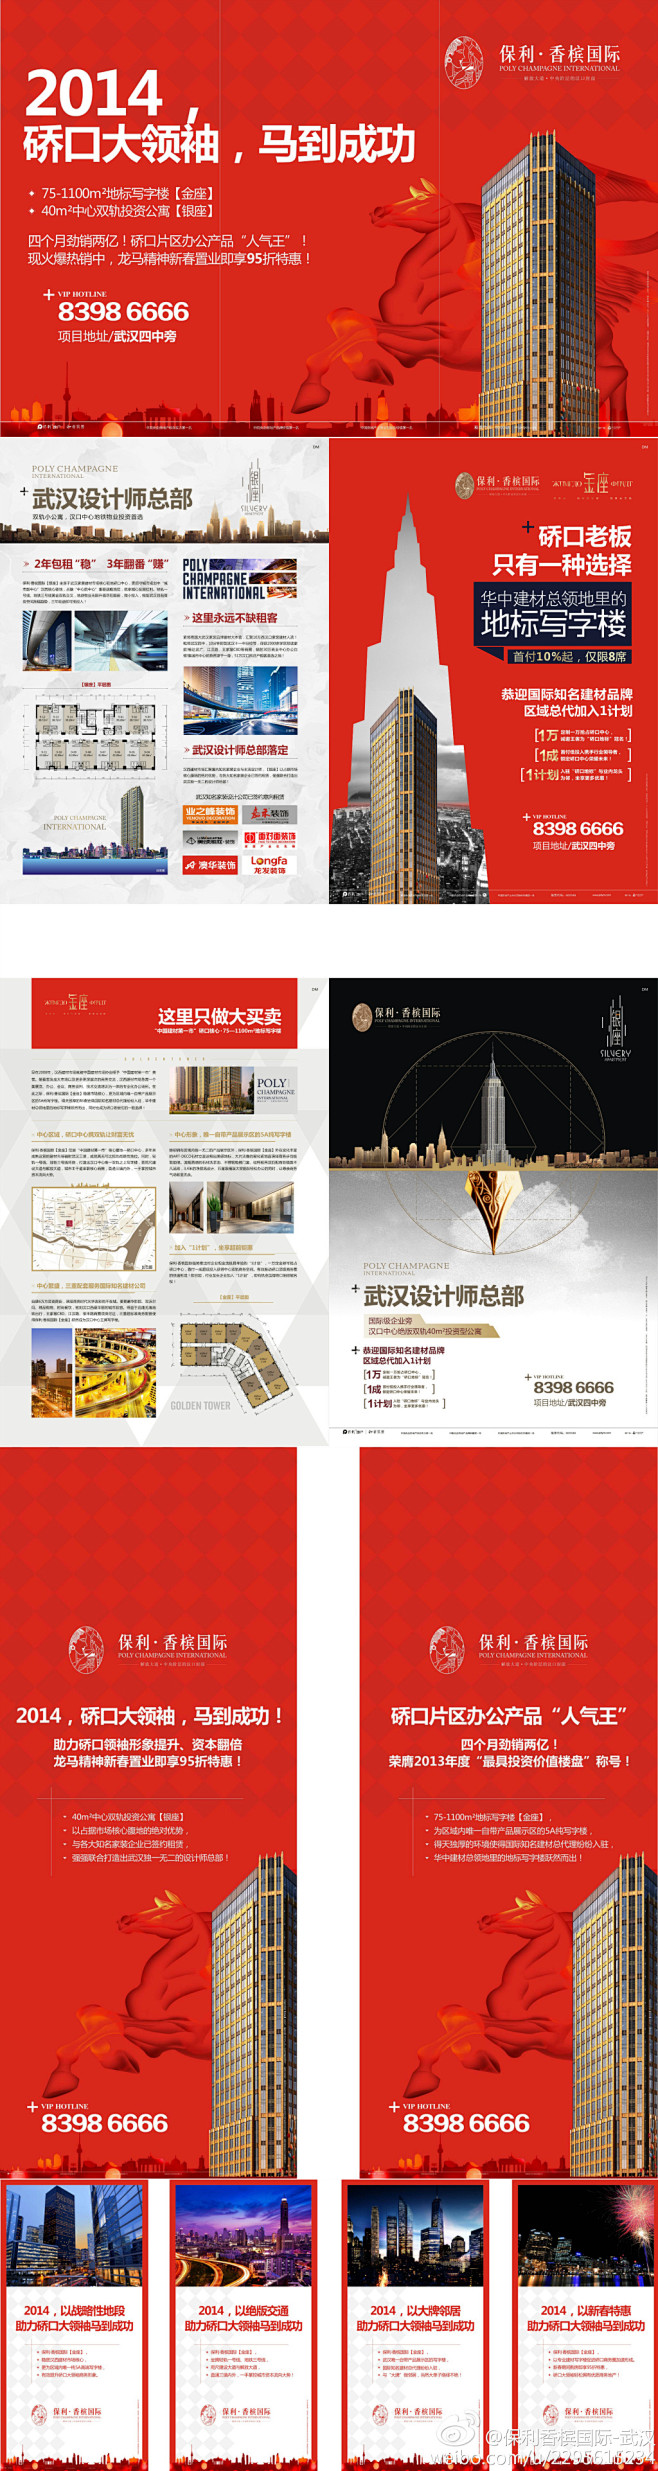 保利香槟国际-武汉的微博  排版 布局